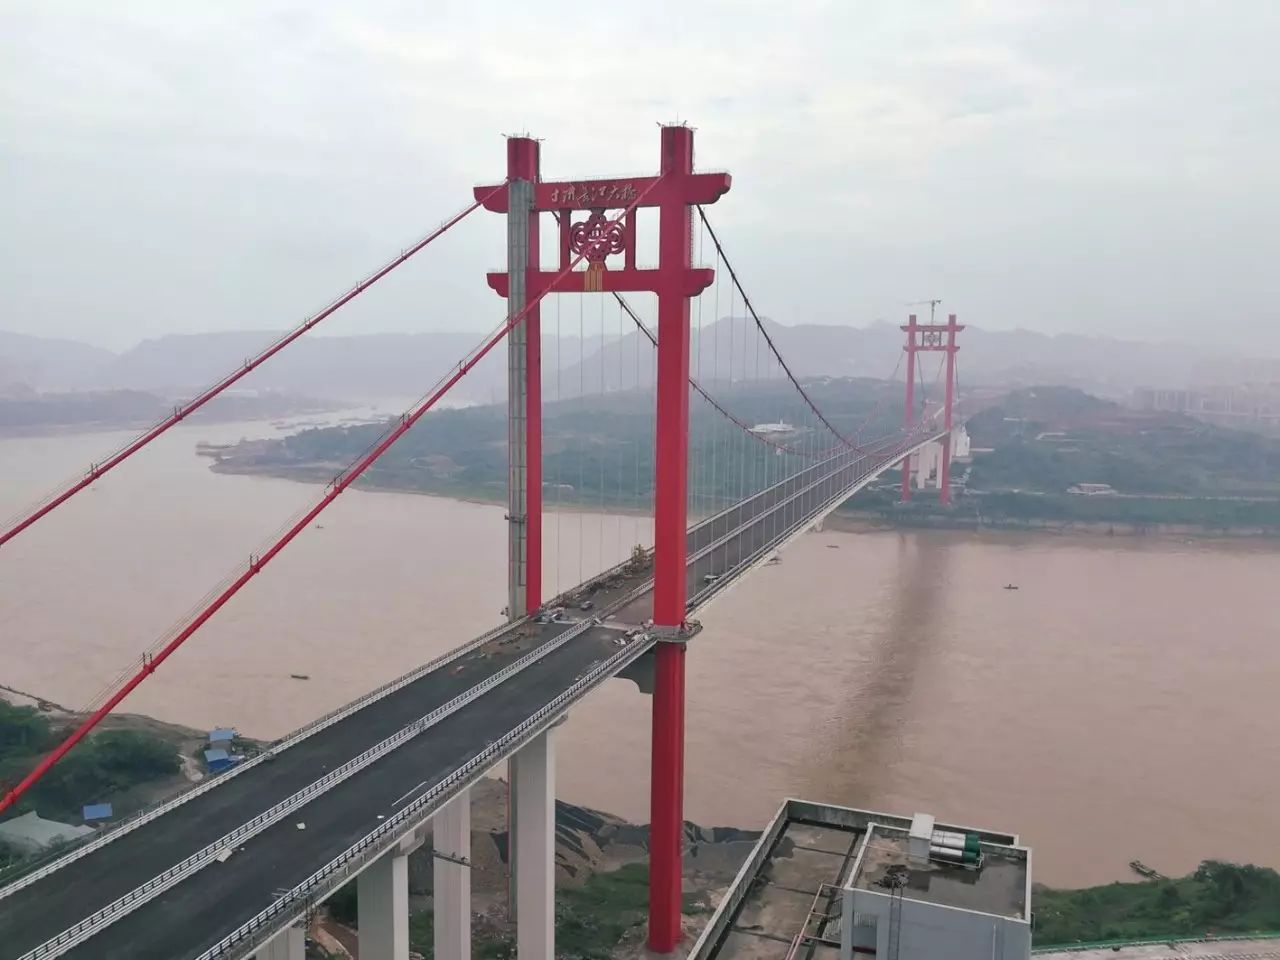 9月6日,寸滩长江大桥涂装工程进入尾声,塔柱,巨型中国结,斜拉索等都